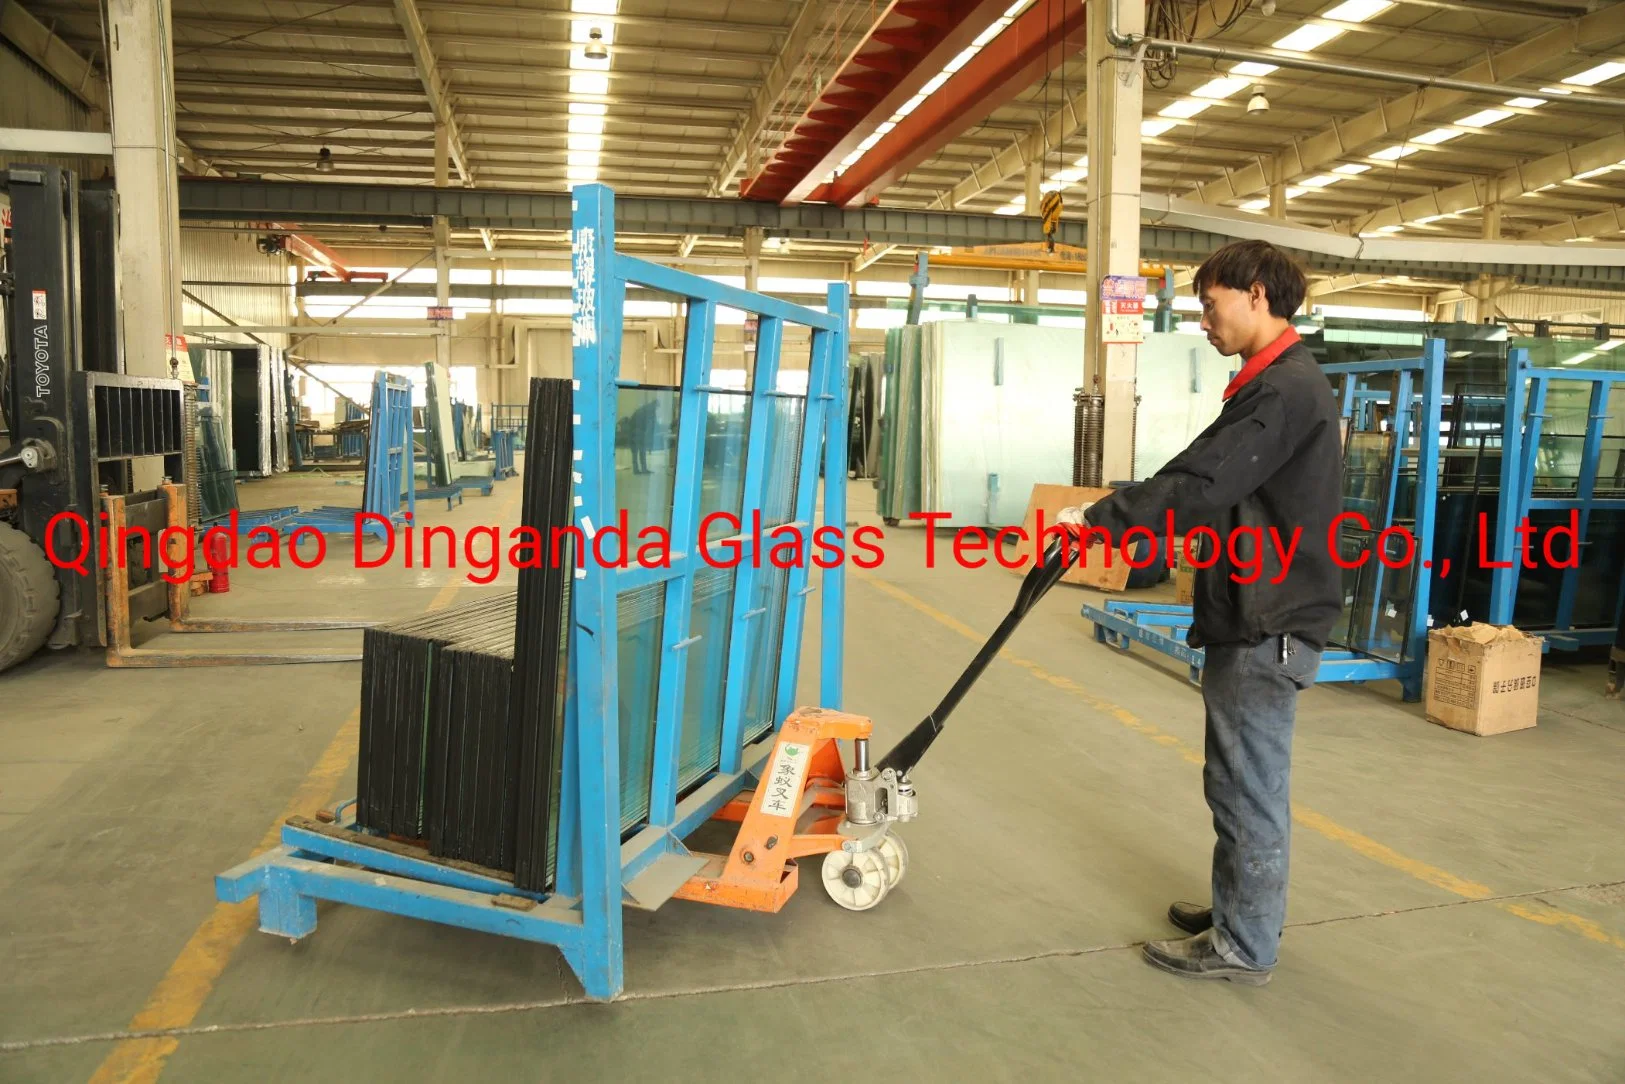 Estanterías de vidrio bastidor metálico en forma de L Tratamiento superficial de Revestimiento en polvo con 4 toneladas de capacidad de carga Diseños personalizados